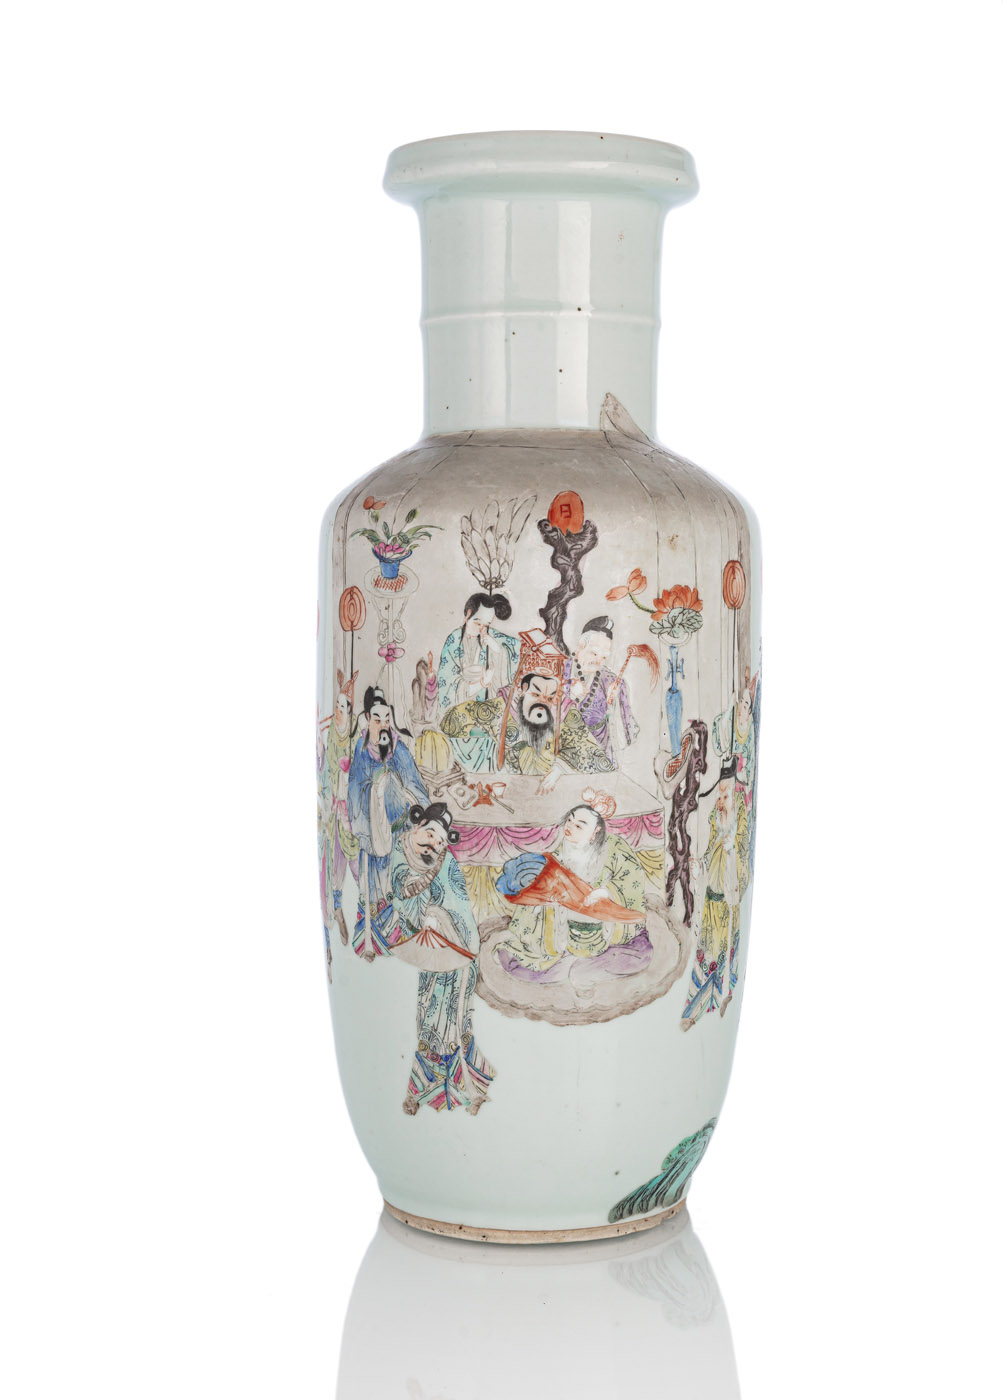 <b>Rouleau-Vase aus Porzellan mit 'Famille rose'-Dekor einer Audienz</b>